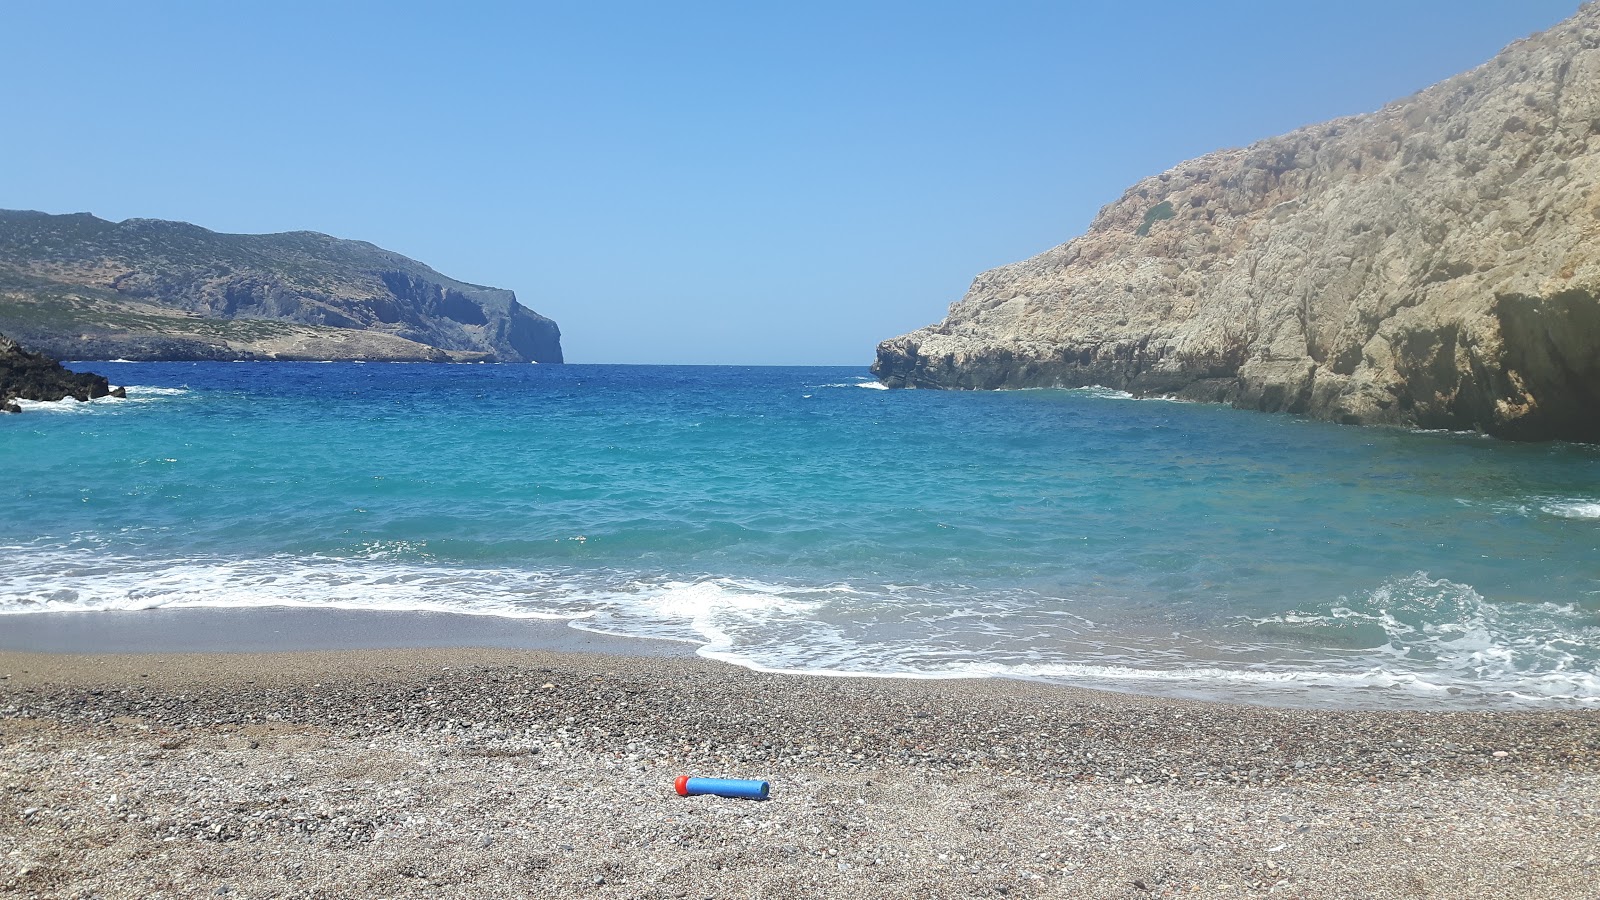 Fotografie cu Xiropotamos beach cu o suprafață de apa pură turcoaz